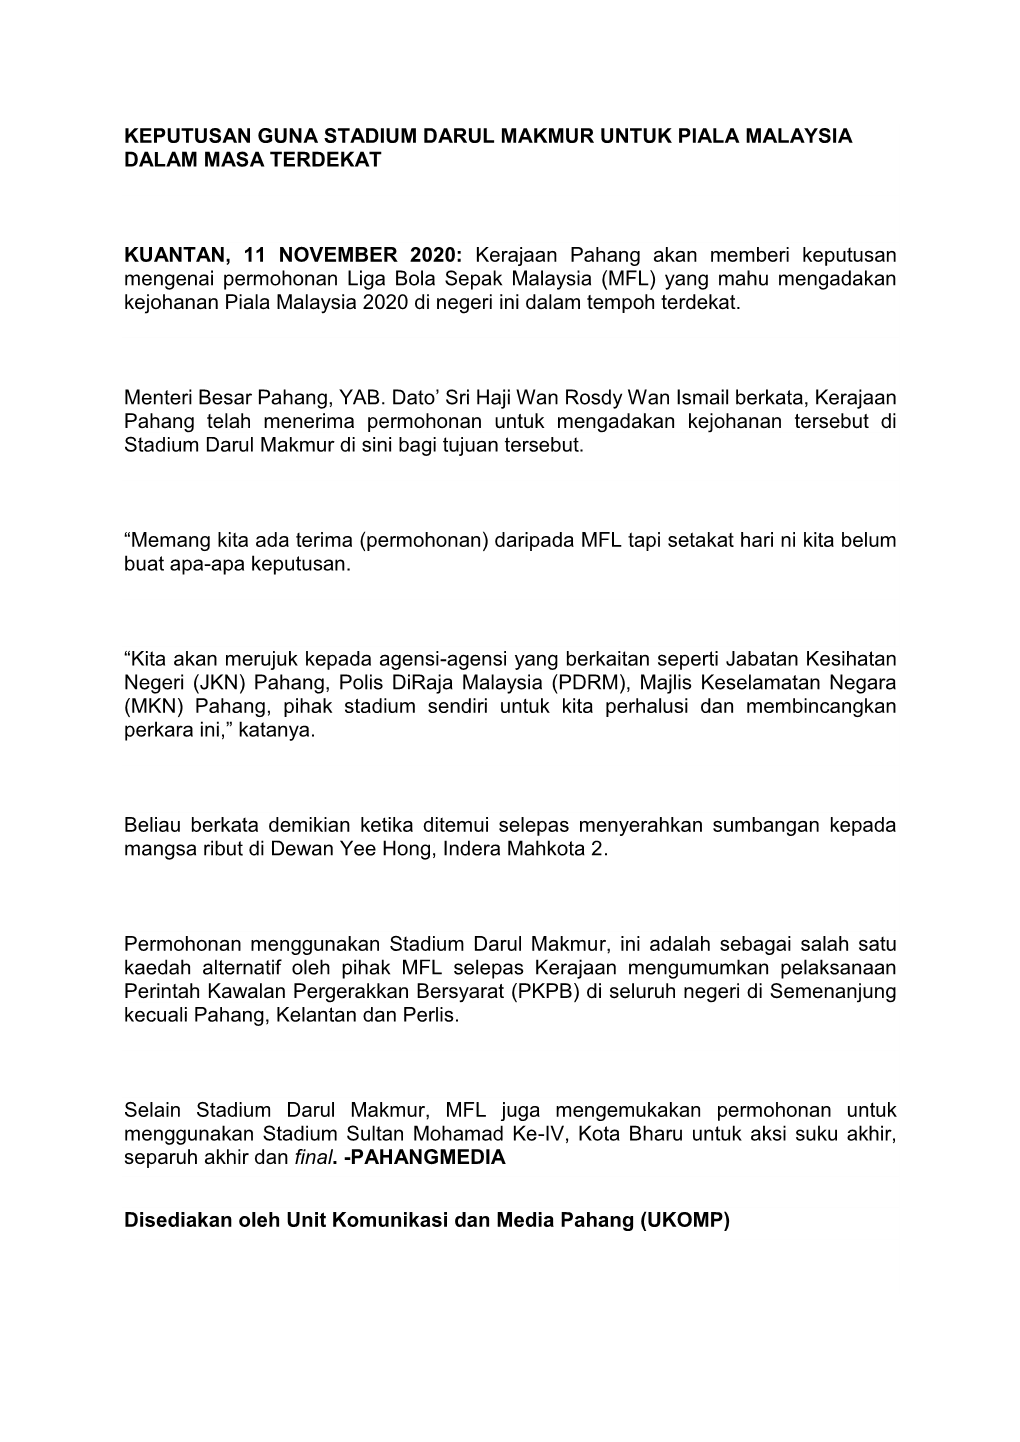 Keputusan Guna Stadium Darul Makmur Untuk Piala Malaysia Dalam Masa Terdekat